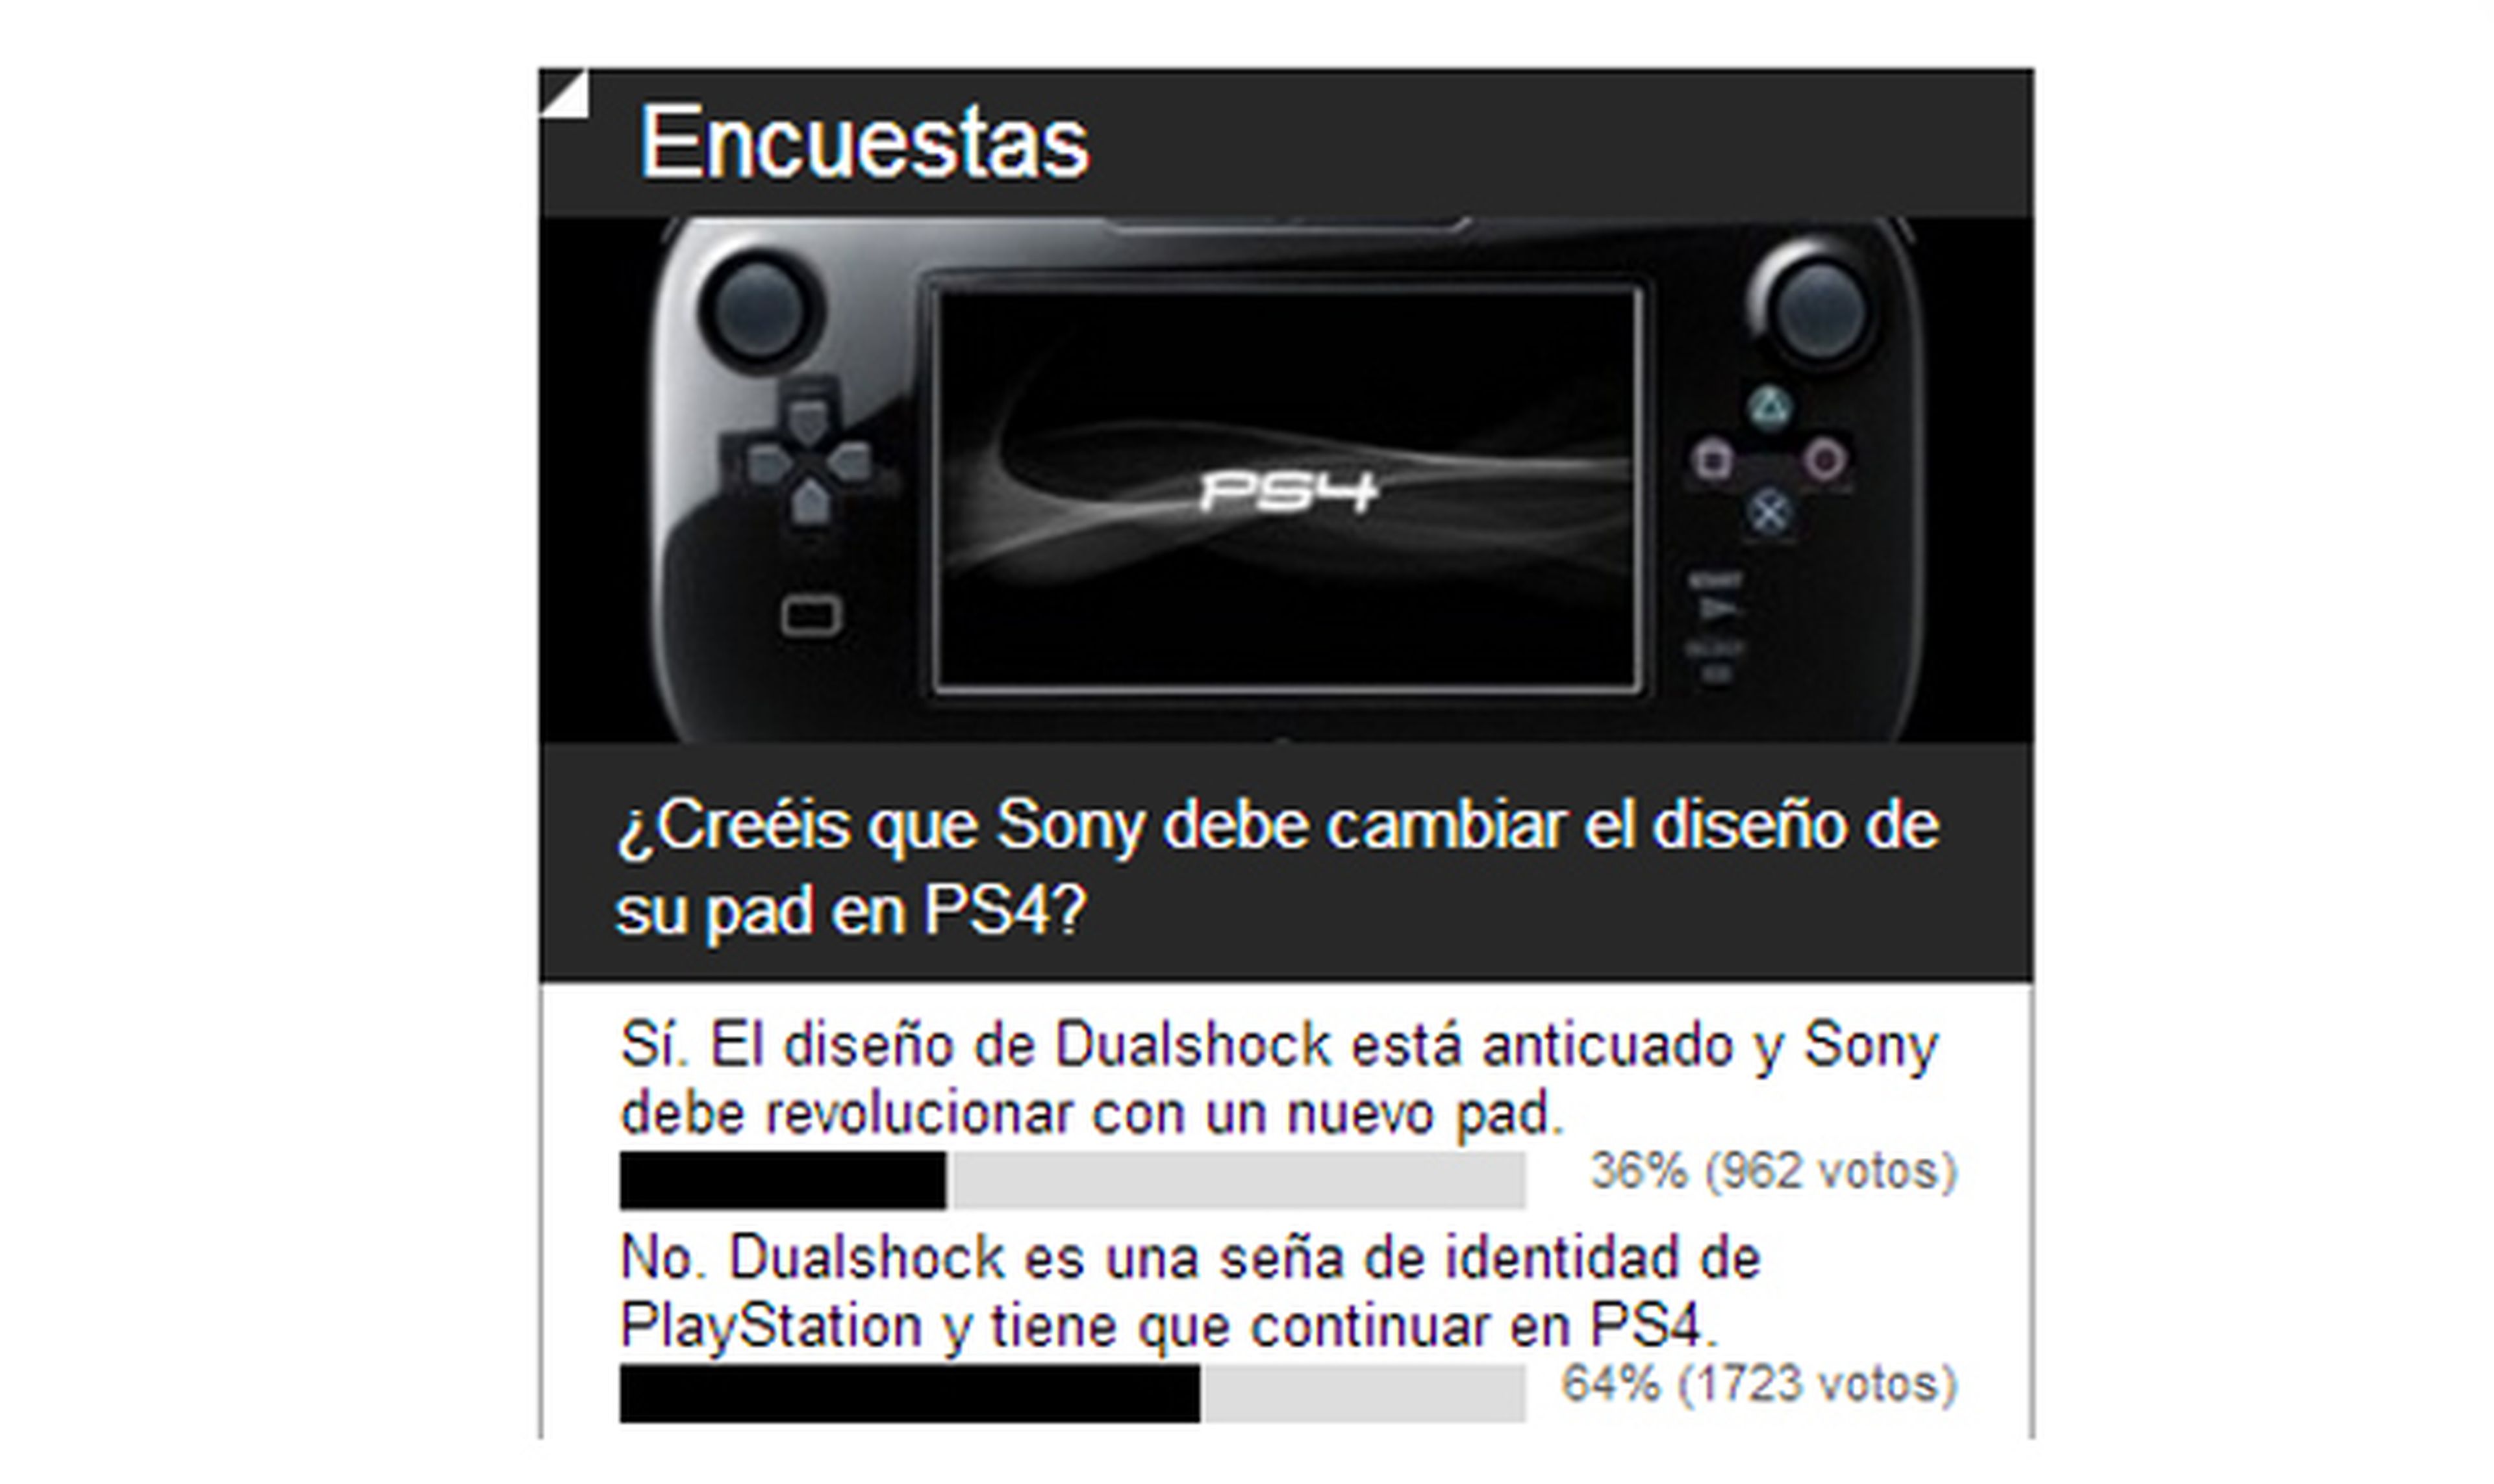 Encuesta: Dualshock debería ser el mando de PS4